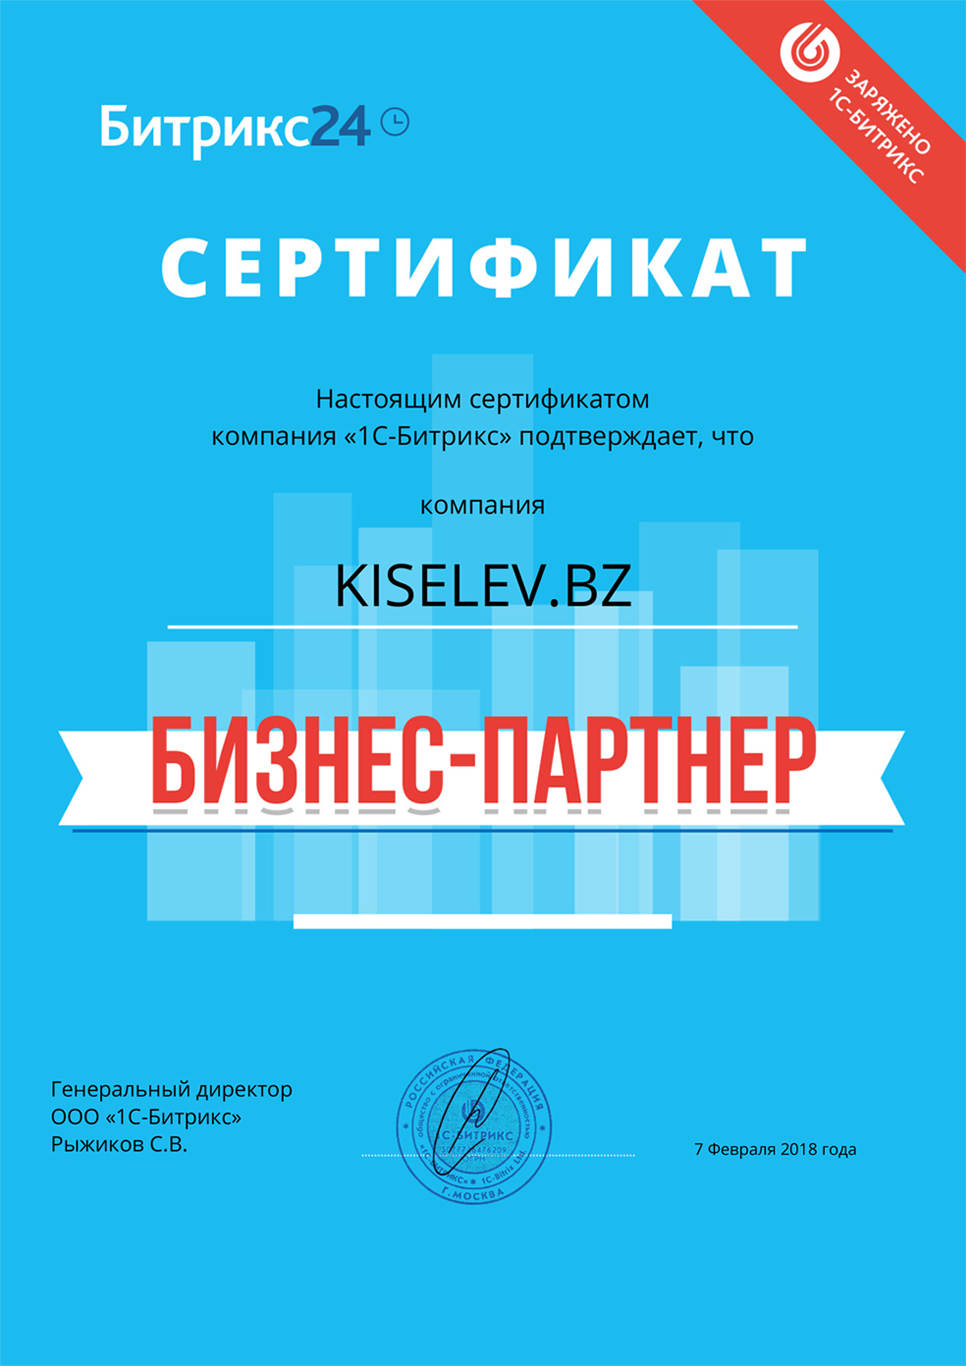 Сертификат партнёра по АМОСРМ в Новоуральске